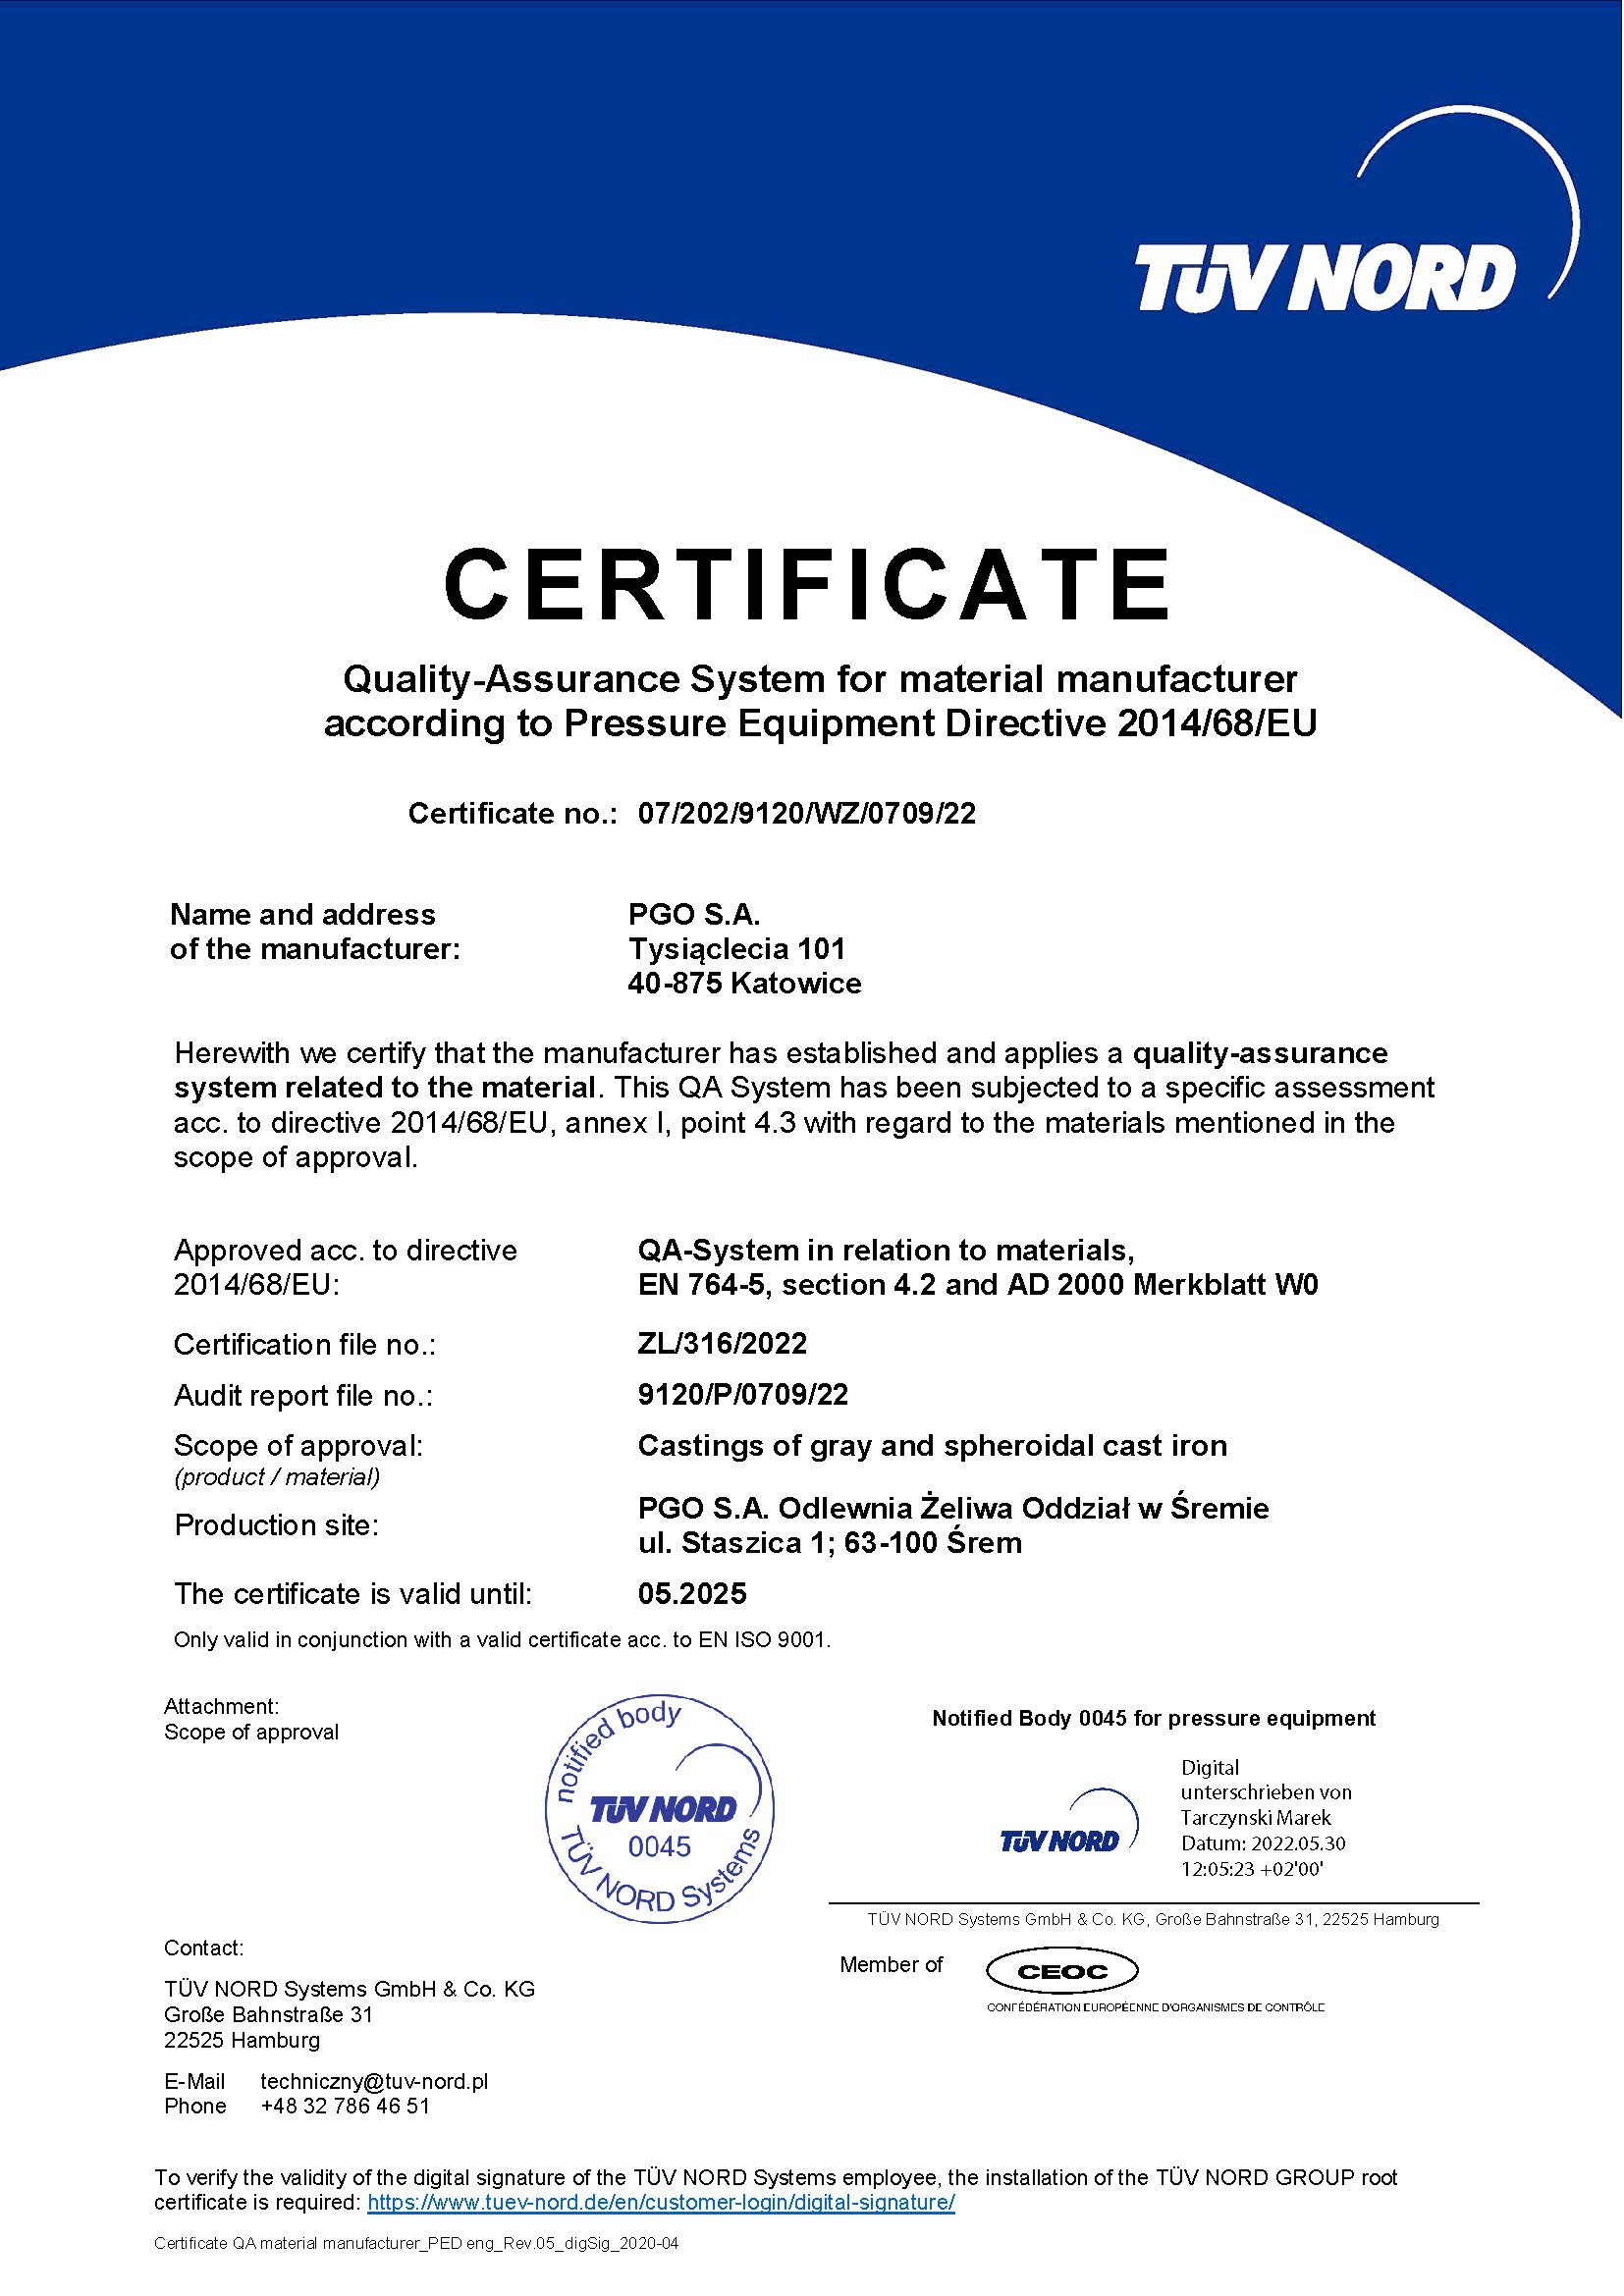 Certyfikat TUV - System Zapewnienia Jakości Producenta Materiałów